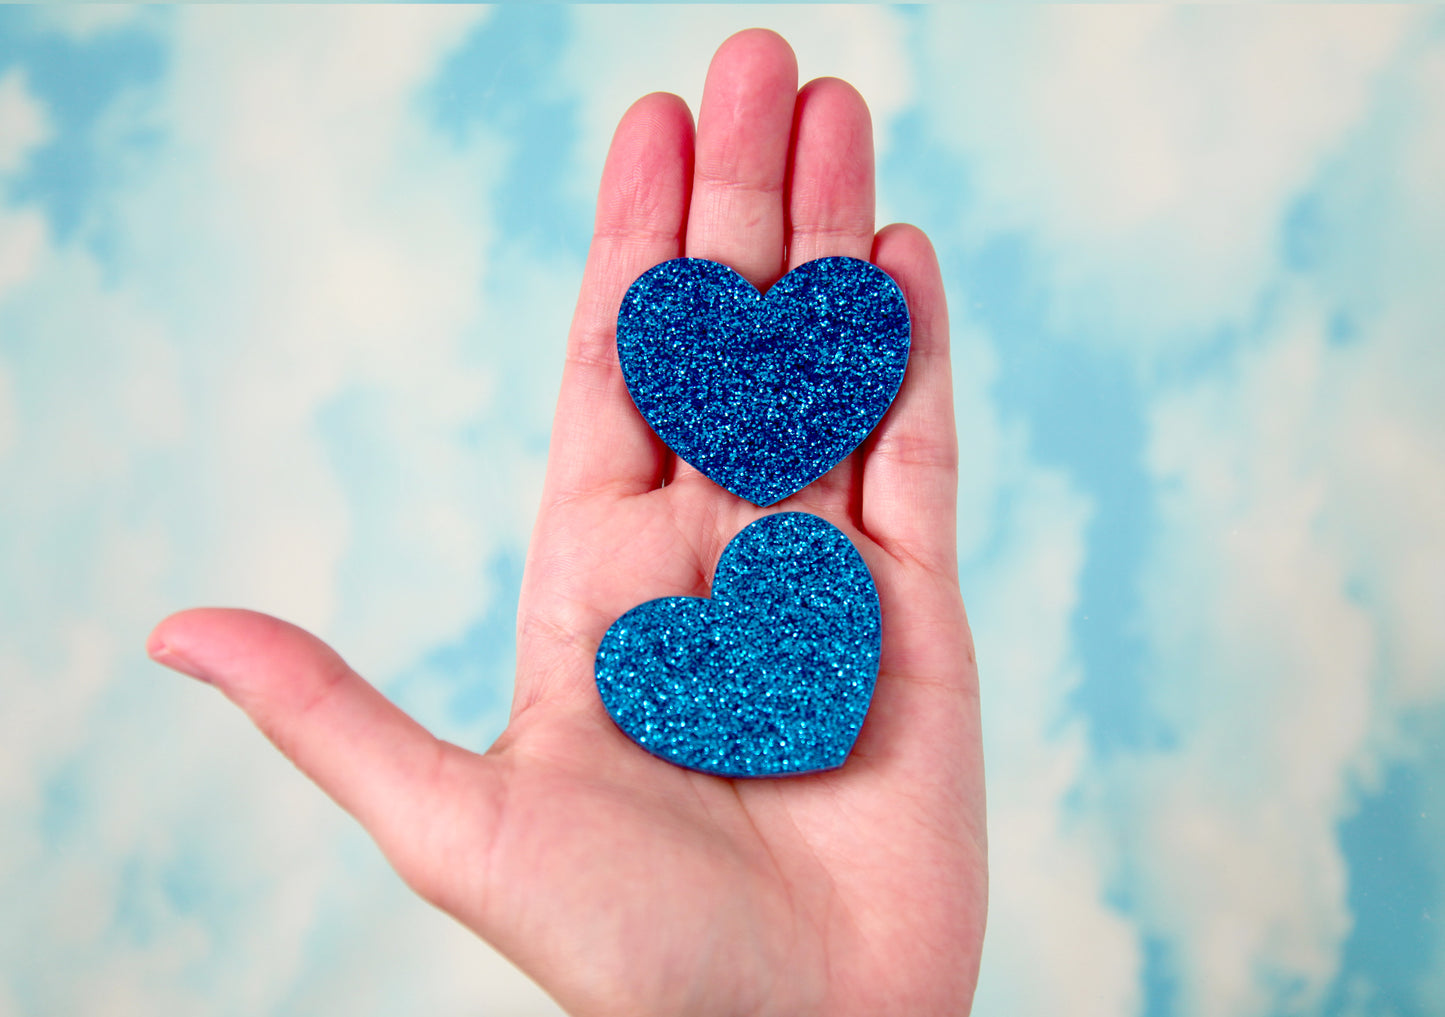 Heart Cabochons - 45mm Blue Glitter Aqua Turquoise Glittery Color Heart Cabochons - 4 pc set